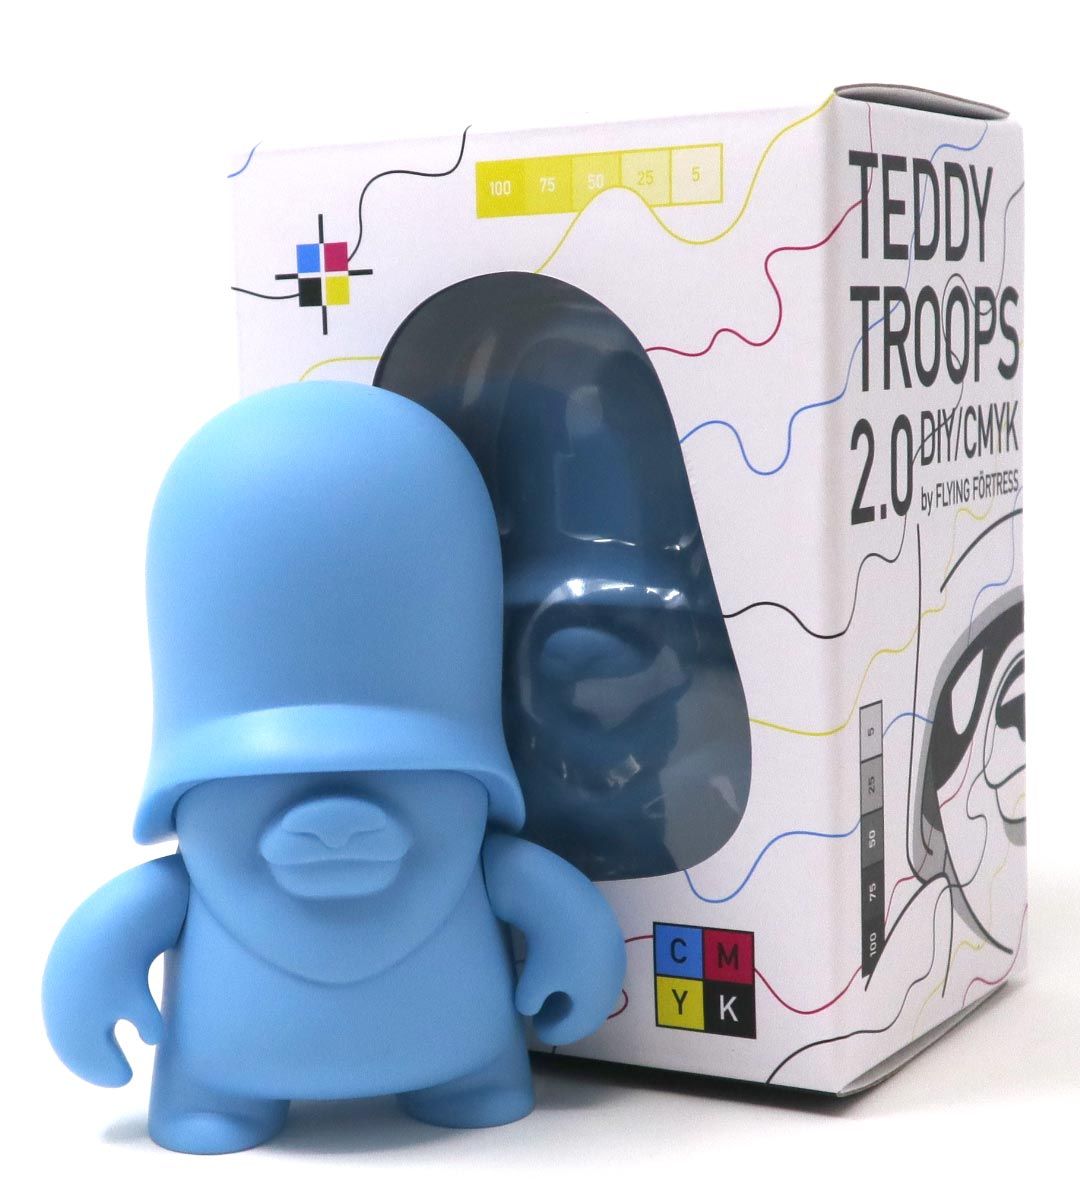 4 "Teddy Troops 2.0 DIY/CMYK - CYAN